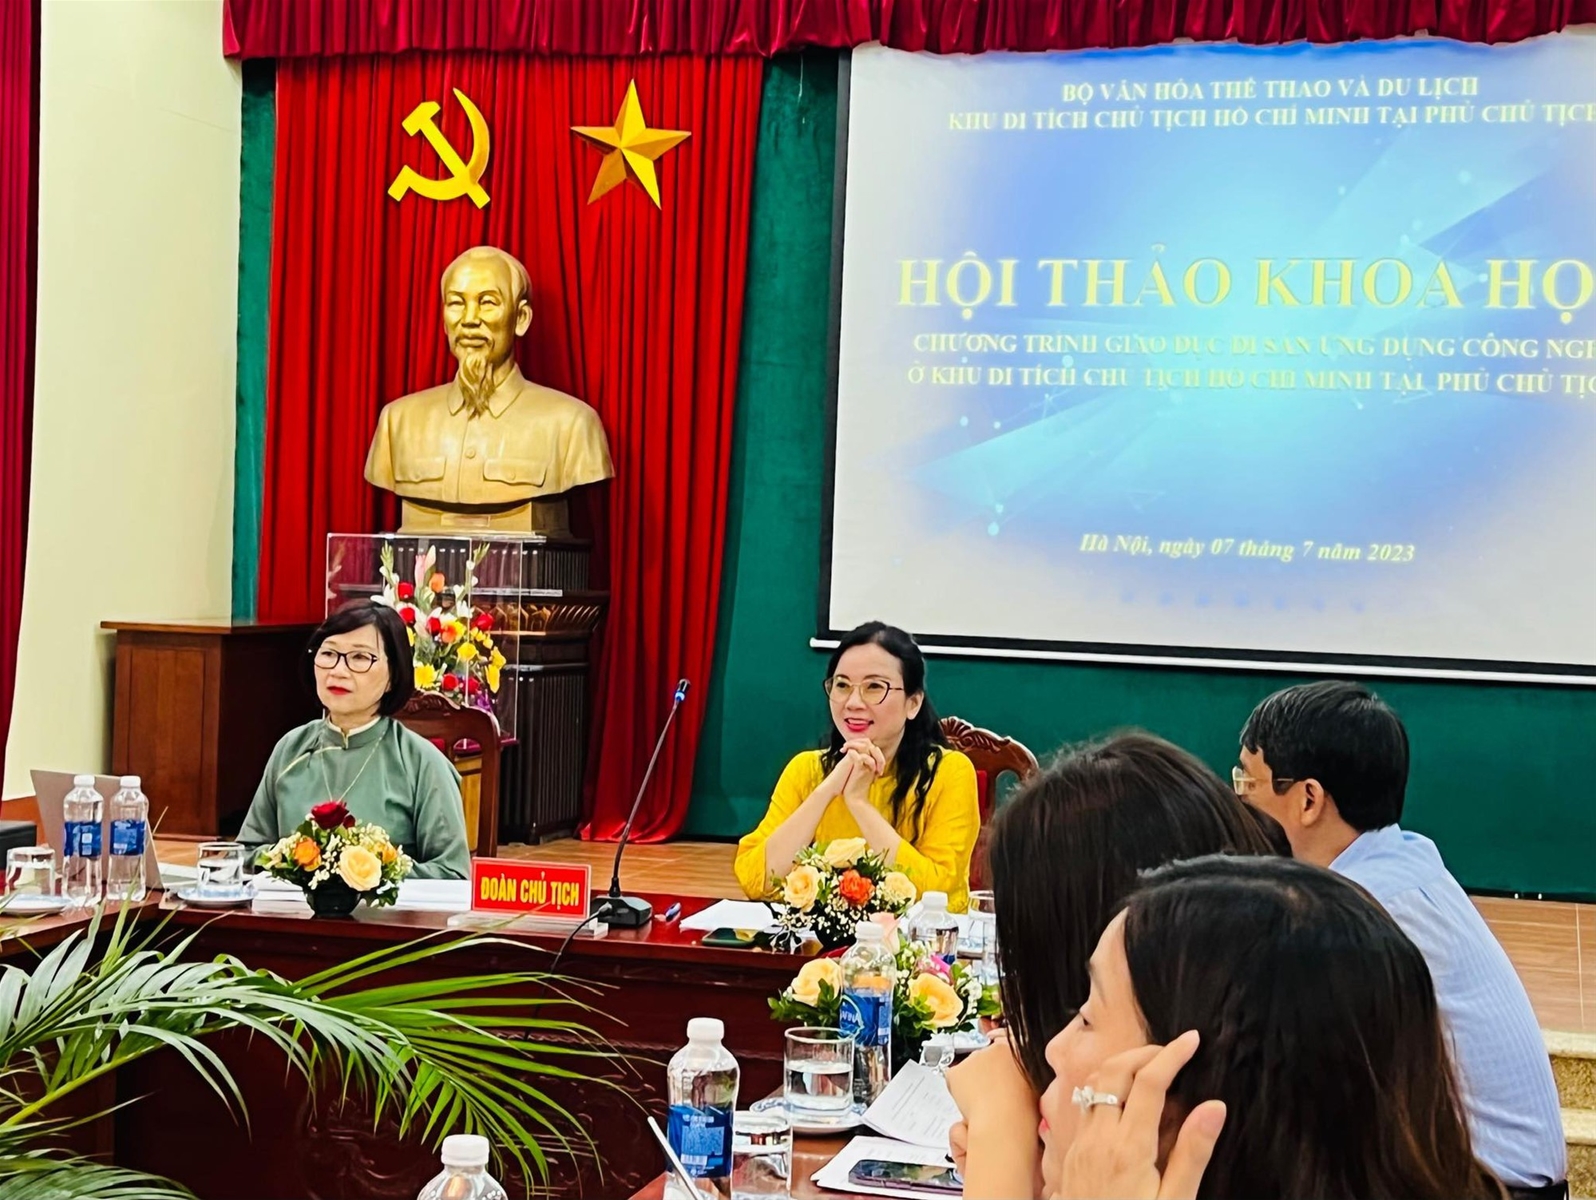 Khu Di tích Chủ tịch Hồ Chí Minh tại Phủ Chủ tịch tổ chức Hội thảo khoa học "Chương trình giáo dục di sản ứng dụng công nghệ ở Khu Di tích Chủ tịch Hồ Chí Minh tại Phủ Chủ tịch", ngày 7/7/2023